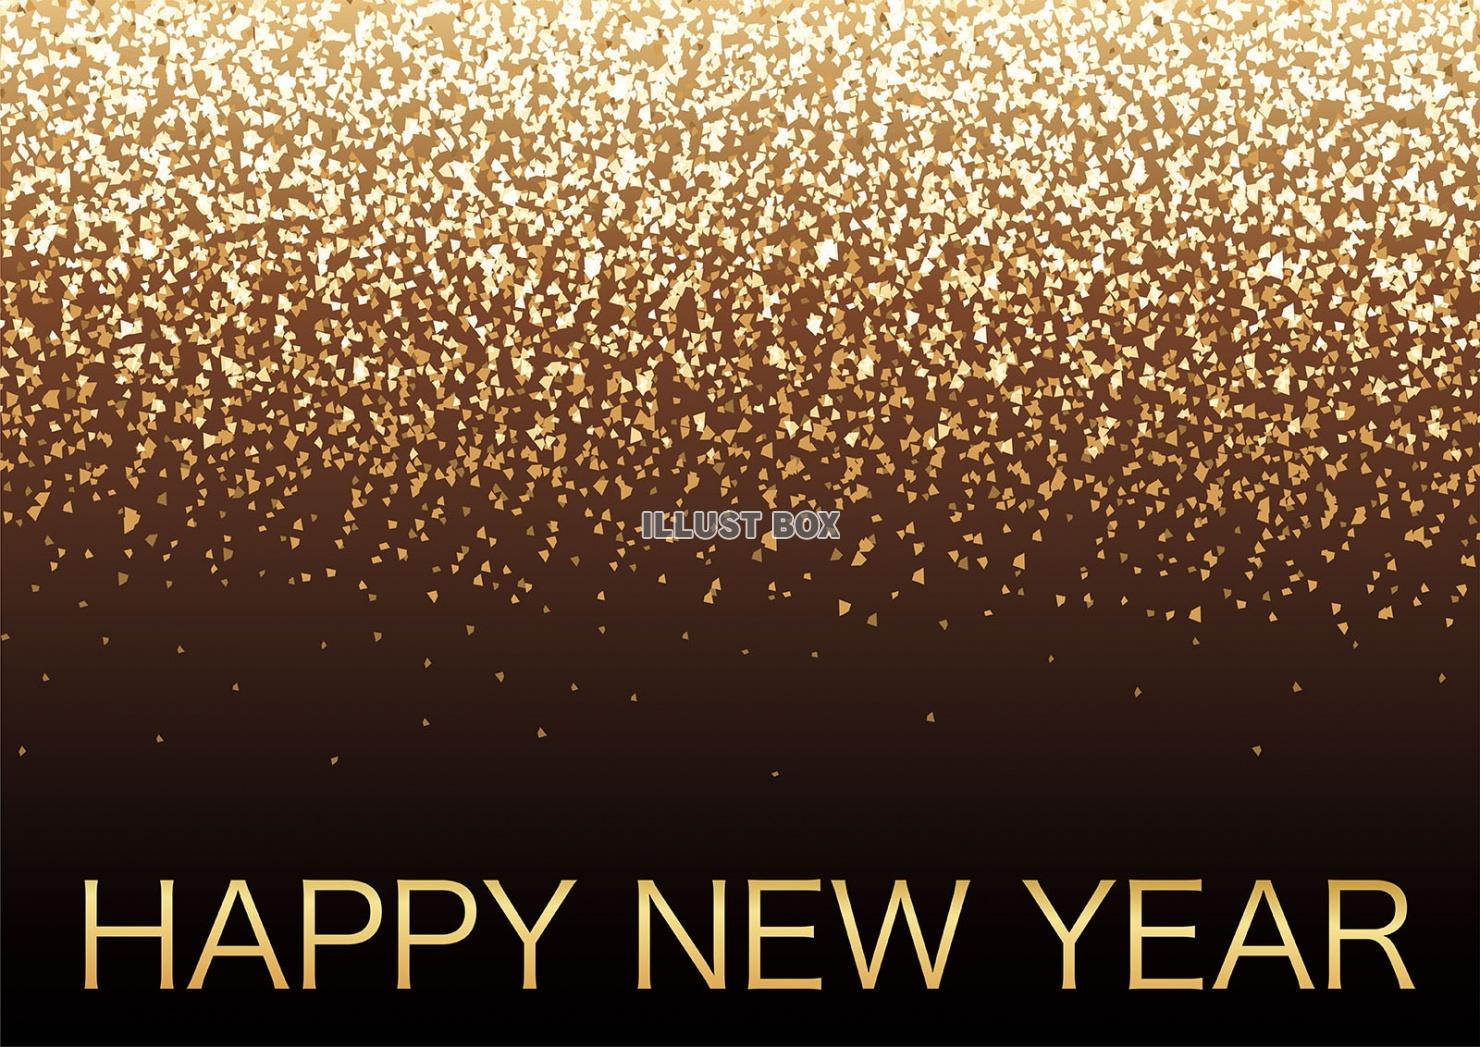 無料イラスト Happy New Year キラキラした粒子の背景とロゴ